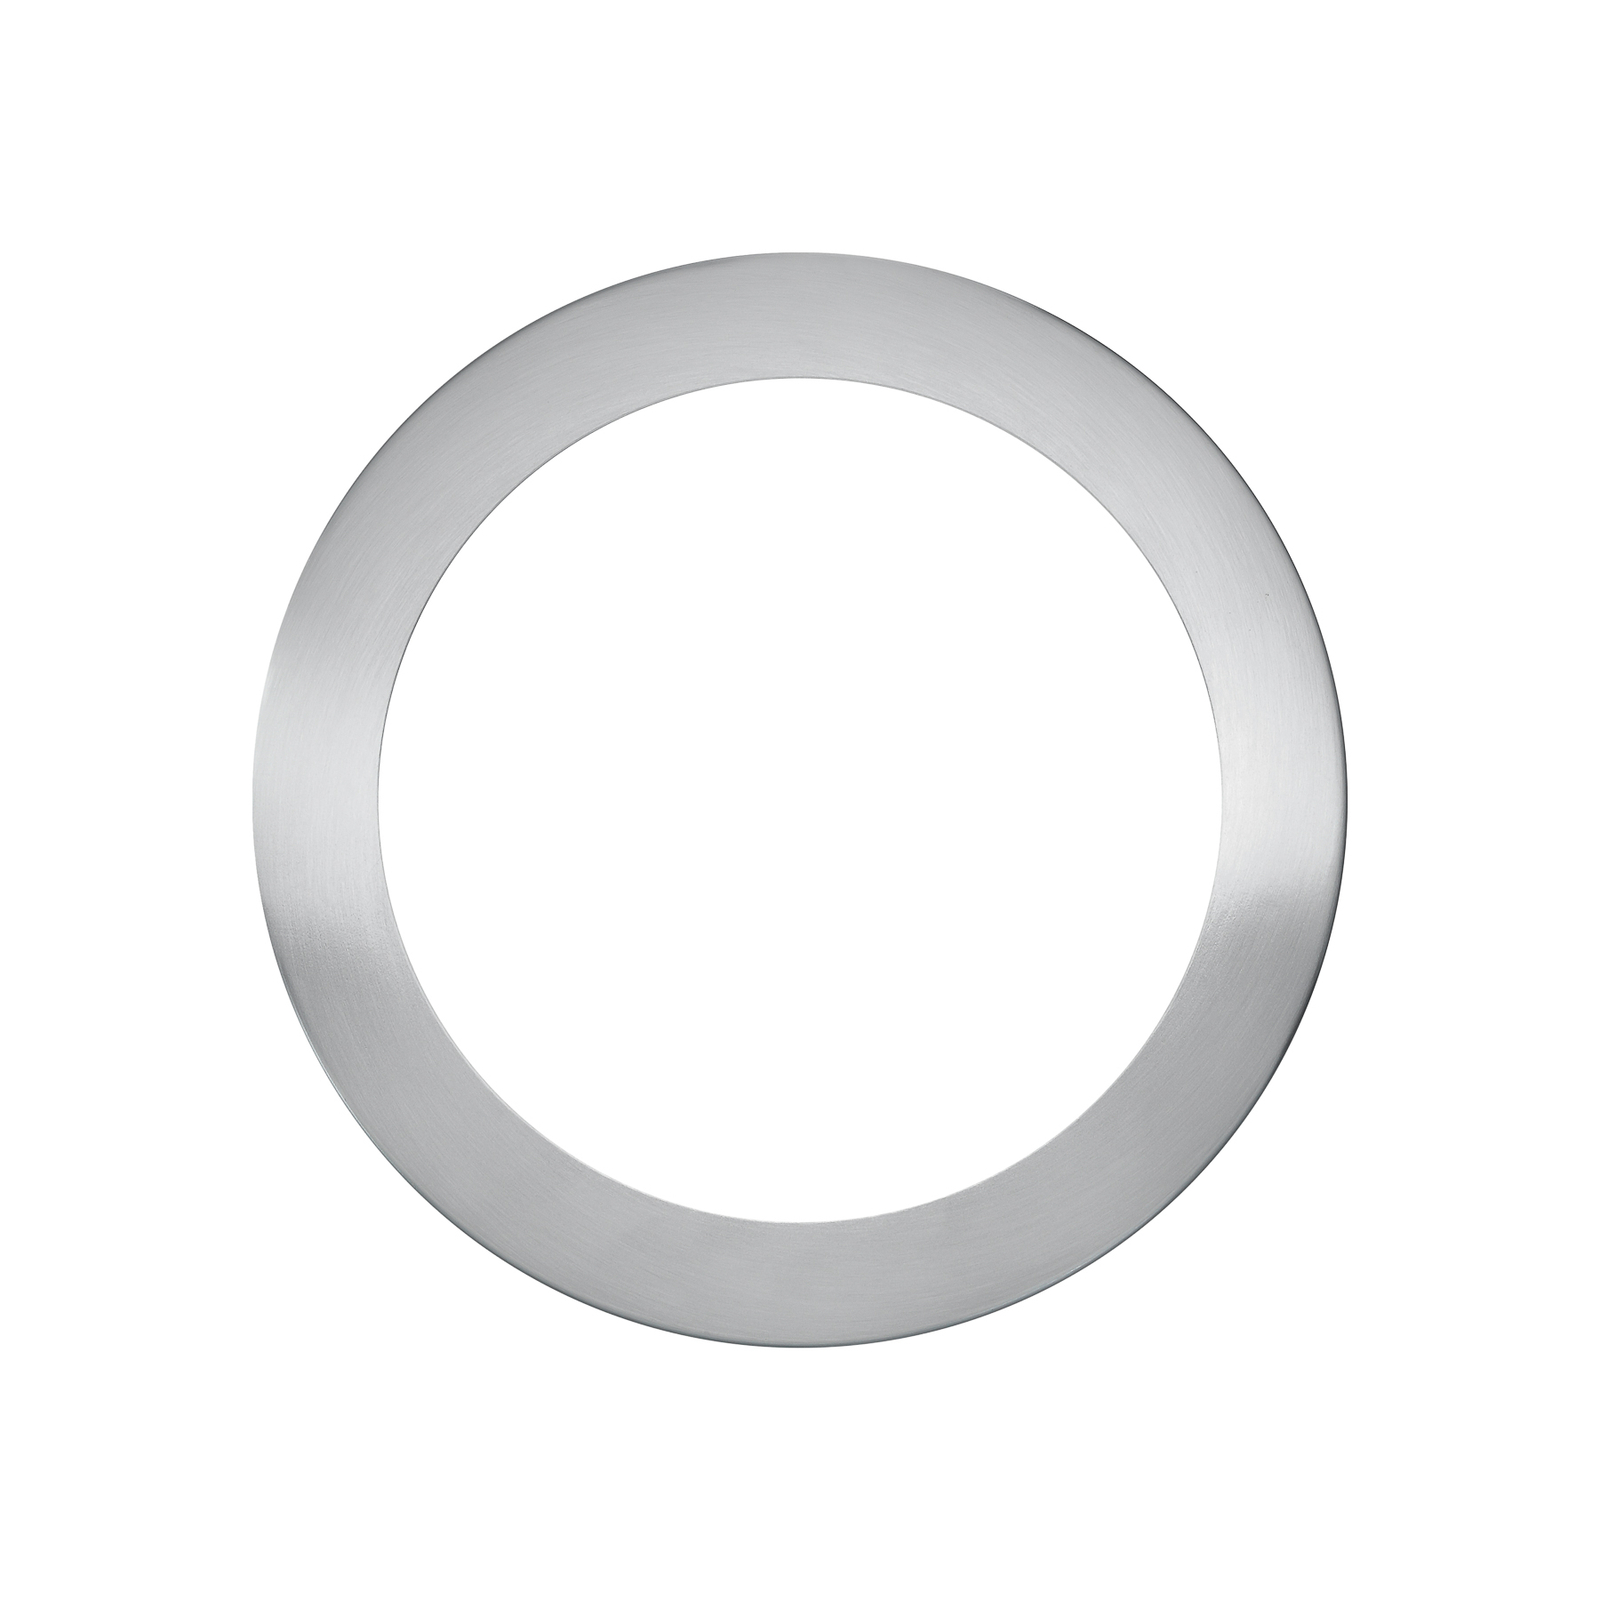 Tapa anillo de Start 5in1 cromo cepillado Ø 22,8cm